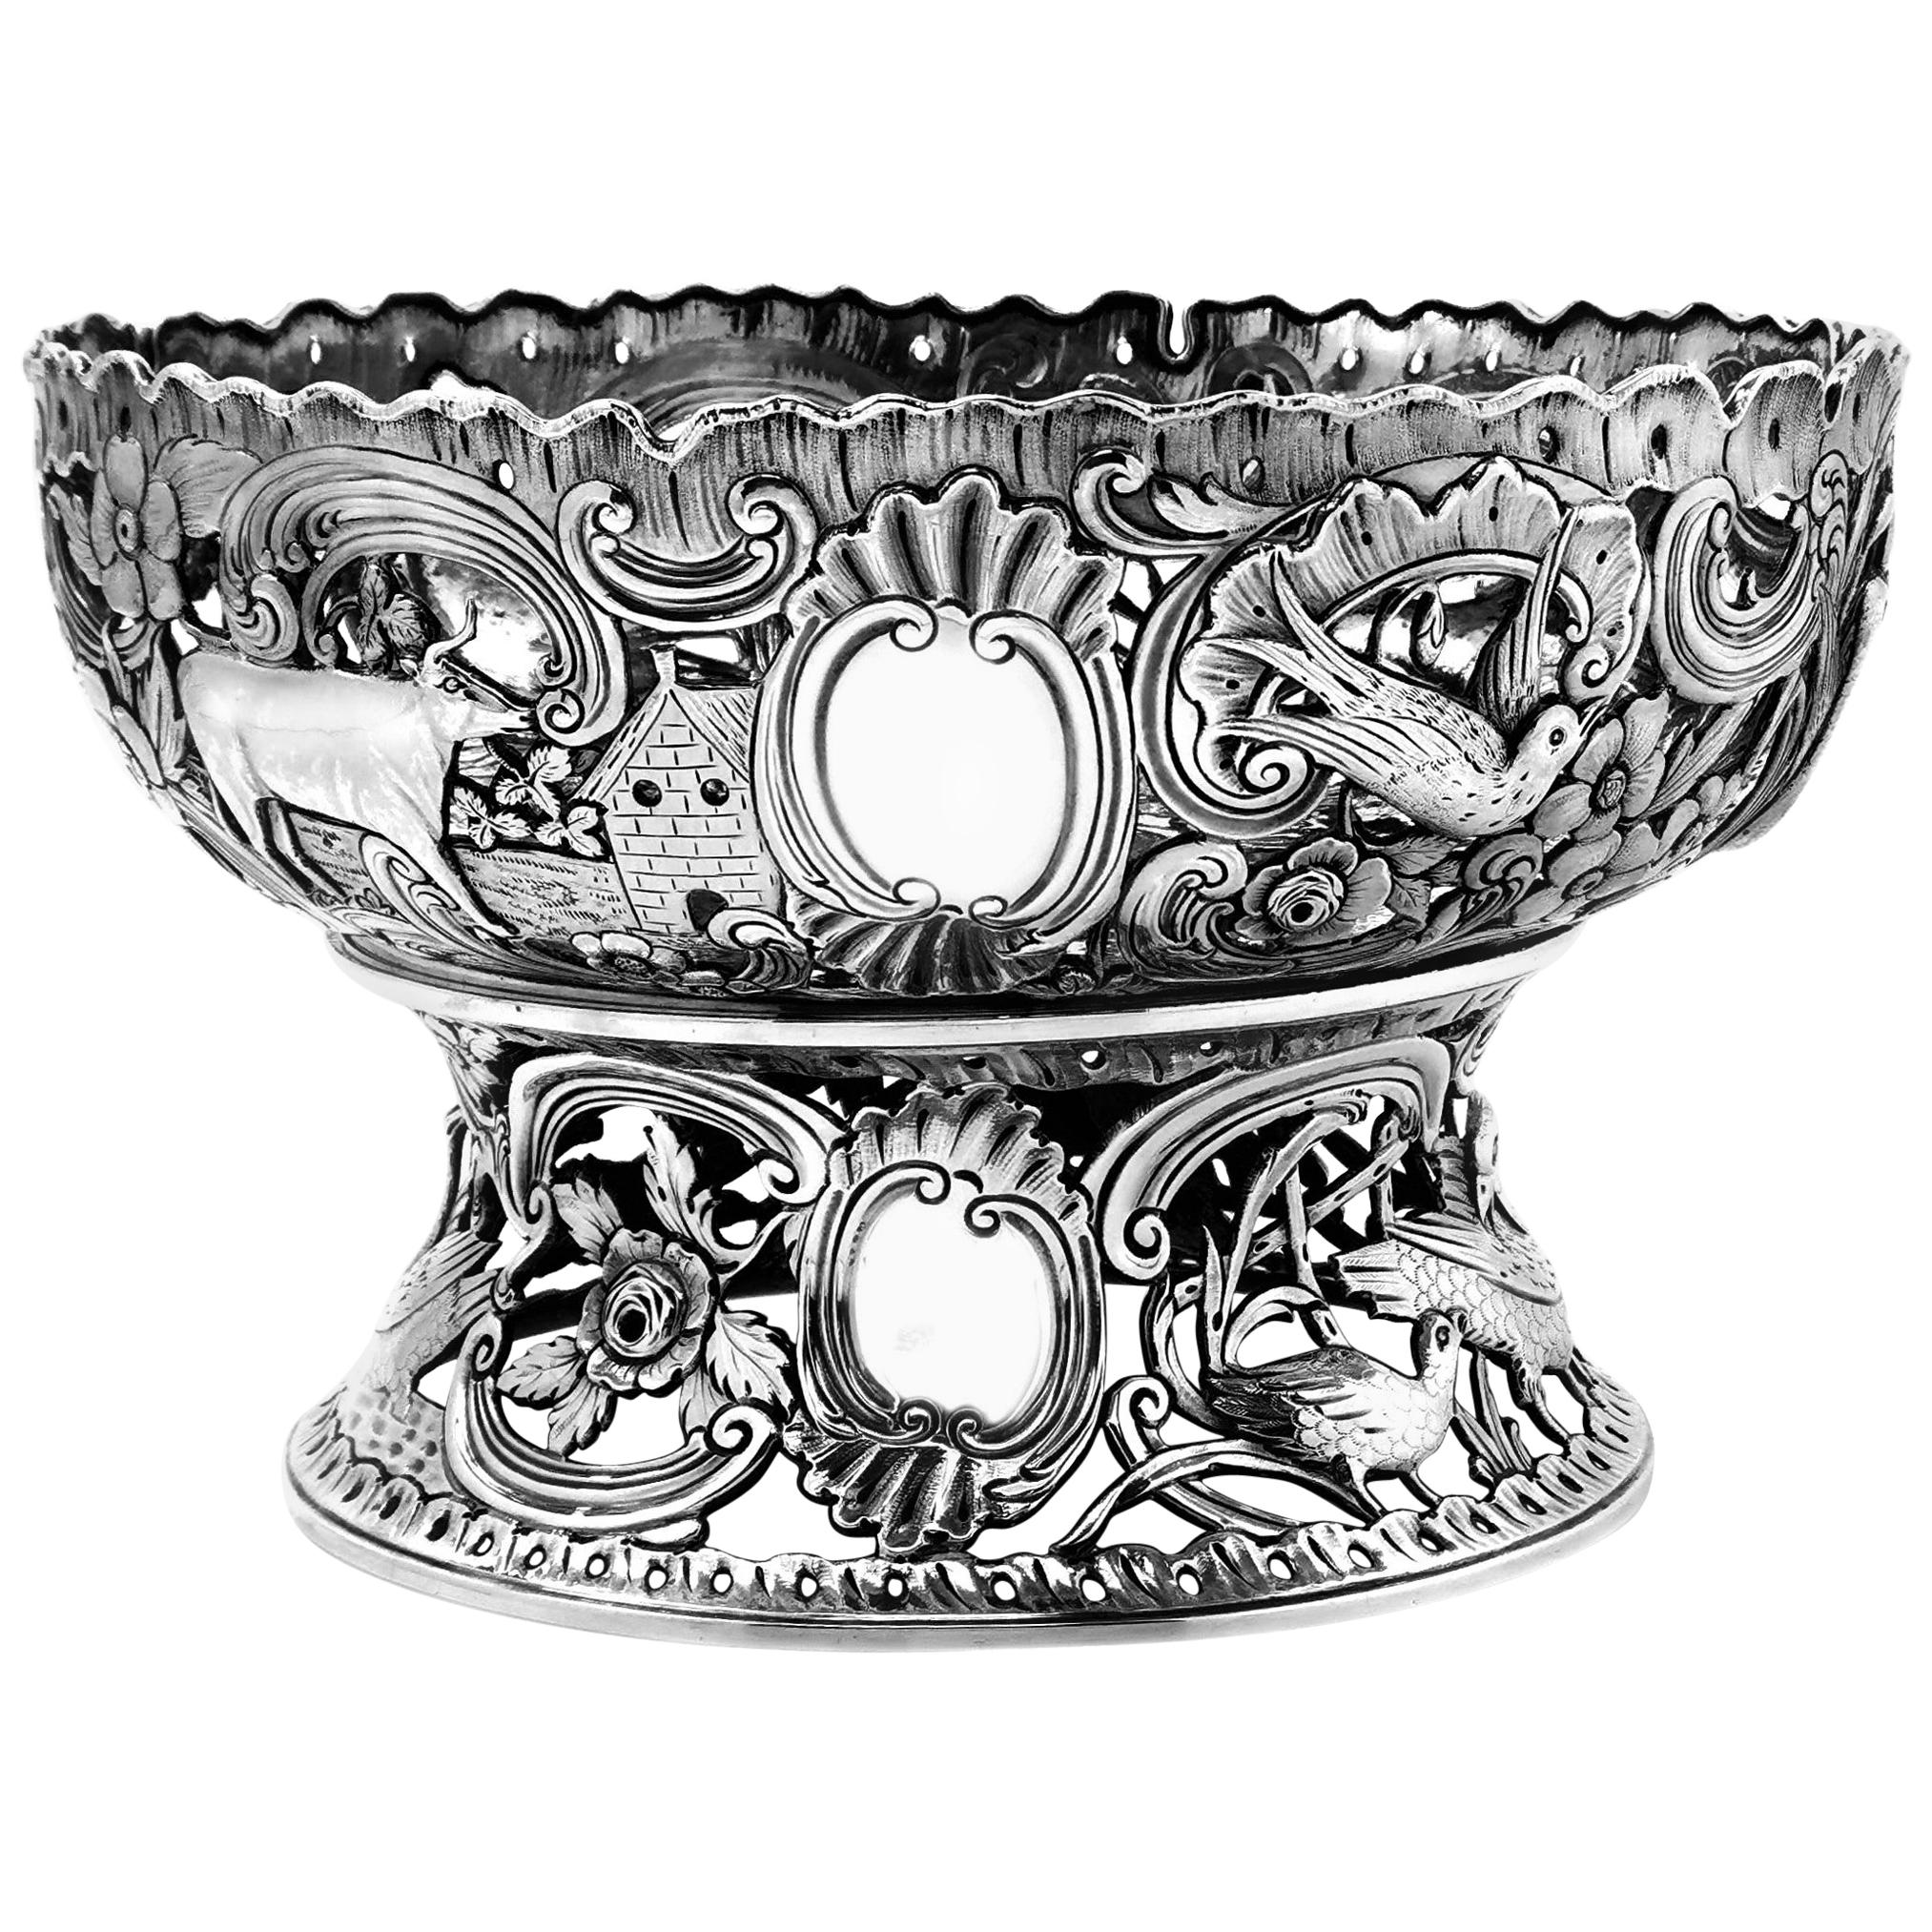 Großer antiker viktorianischer Silberschalenring und Schale im georgianischen irischen Stil, 1900